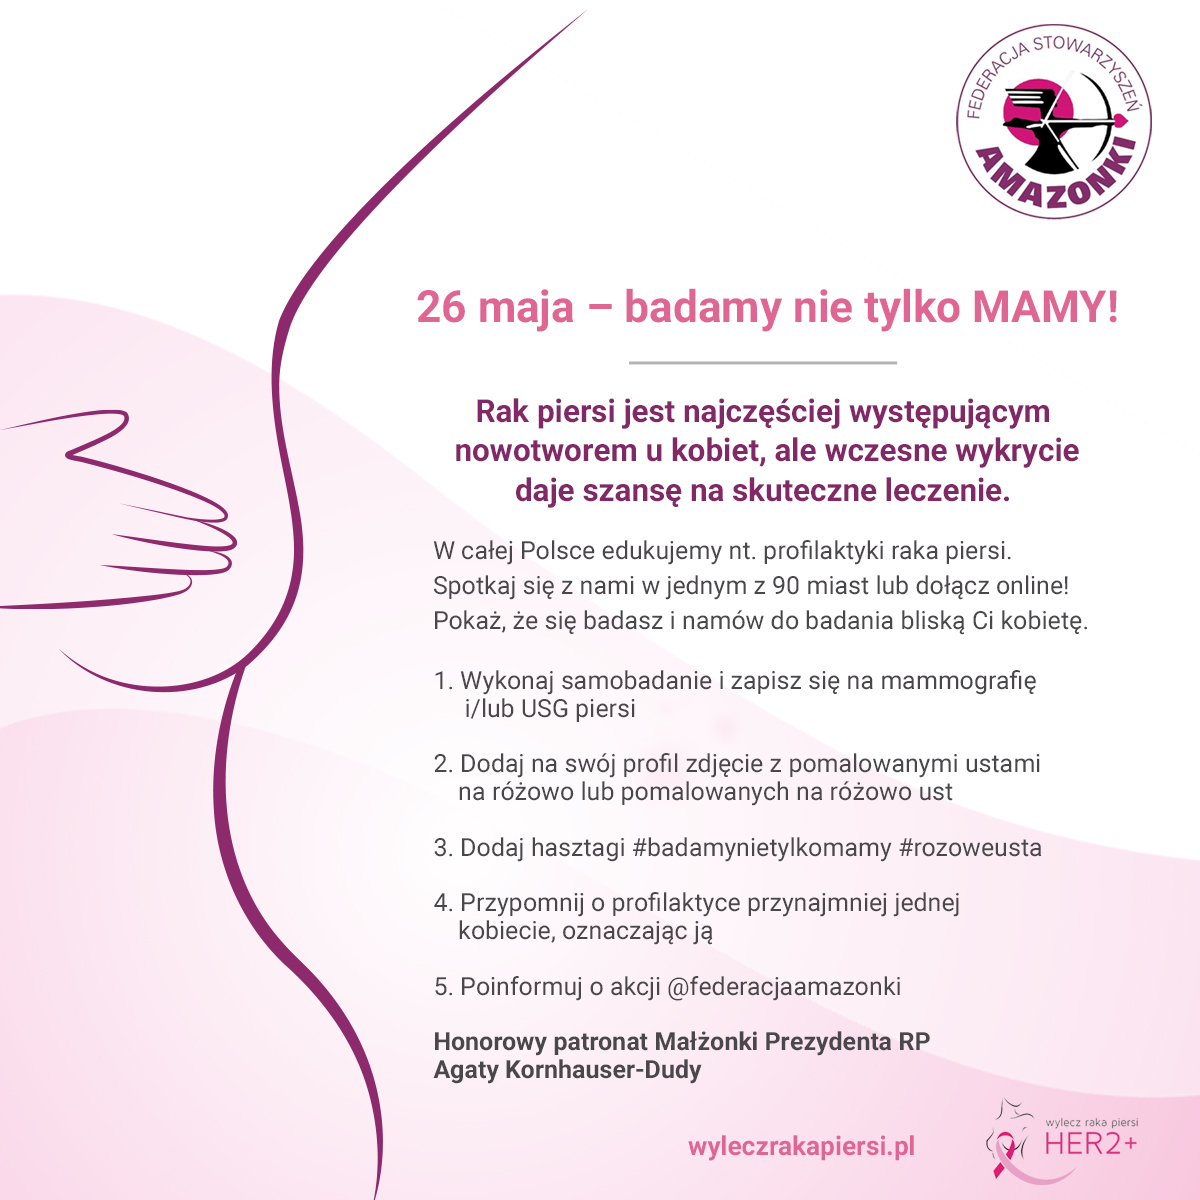 Na zdjęciu widzimy rycinę fragmentu kobiecego ciała z opisem działań profilaktycznych. Rak piersi jest najczęściej występującym nowotworem u kobiet , ale wczesne wykrycie daje szansę na  skuteczne leczenie. W całej Polsce edukujemy nt.profilaktyki  raka piersi. Spotkaj się z nami w jednym z 90 miast lub dołącz online! Pokaż, że się badasz i namów do badania bliską Tobie kobietę. 1.Wykonaj samobadanie i zapisz się na mamografię i/lub USG piersi. 2. Dodaj na swoj profil zdjęcie z pomalowanymi ustami na różowo lub pomalowanych na różowo ust. 3. Dodaj hasztagi #badamynietylkomamy #rozoweusta 4. Przypomnij o profilaktyce przynajmniej jednej kobiecie, oznaczając ją 5. Poinformuj o akcji @federacjaamazonki Honorowy Patronat Małżonki Prezydenta RP Agaty Kornhauser-Dudy